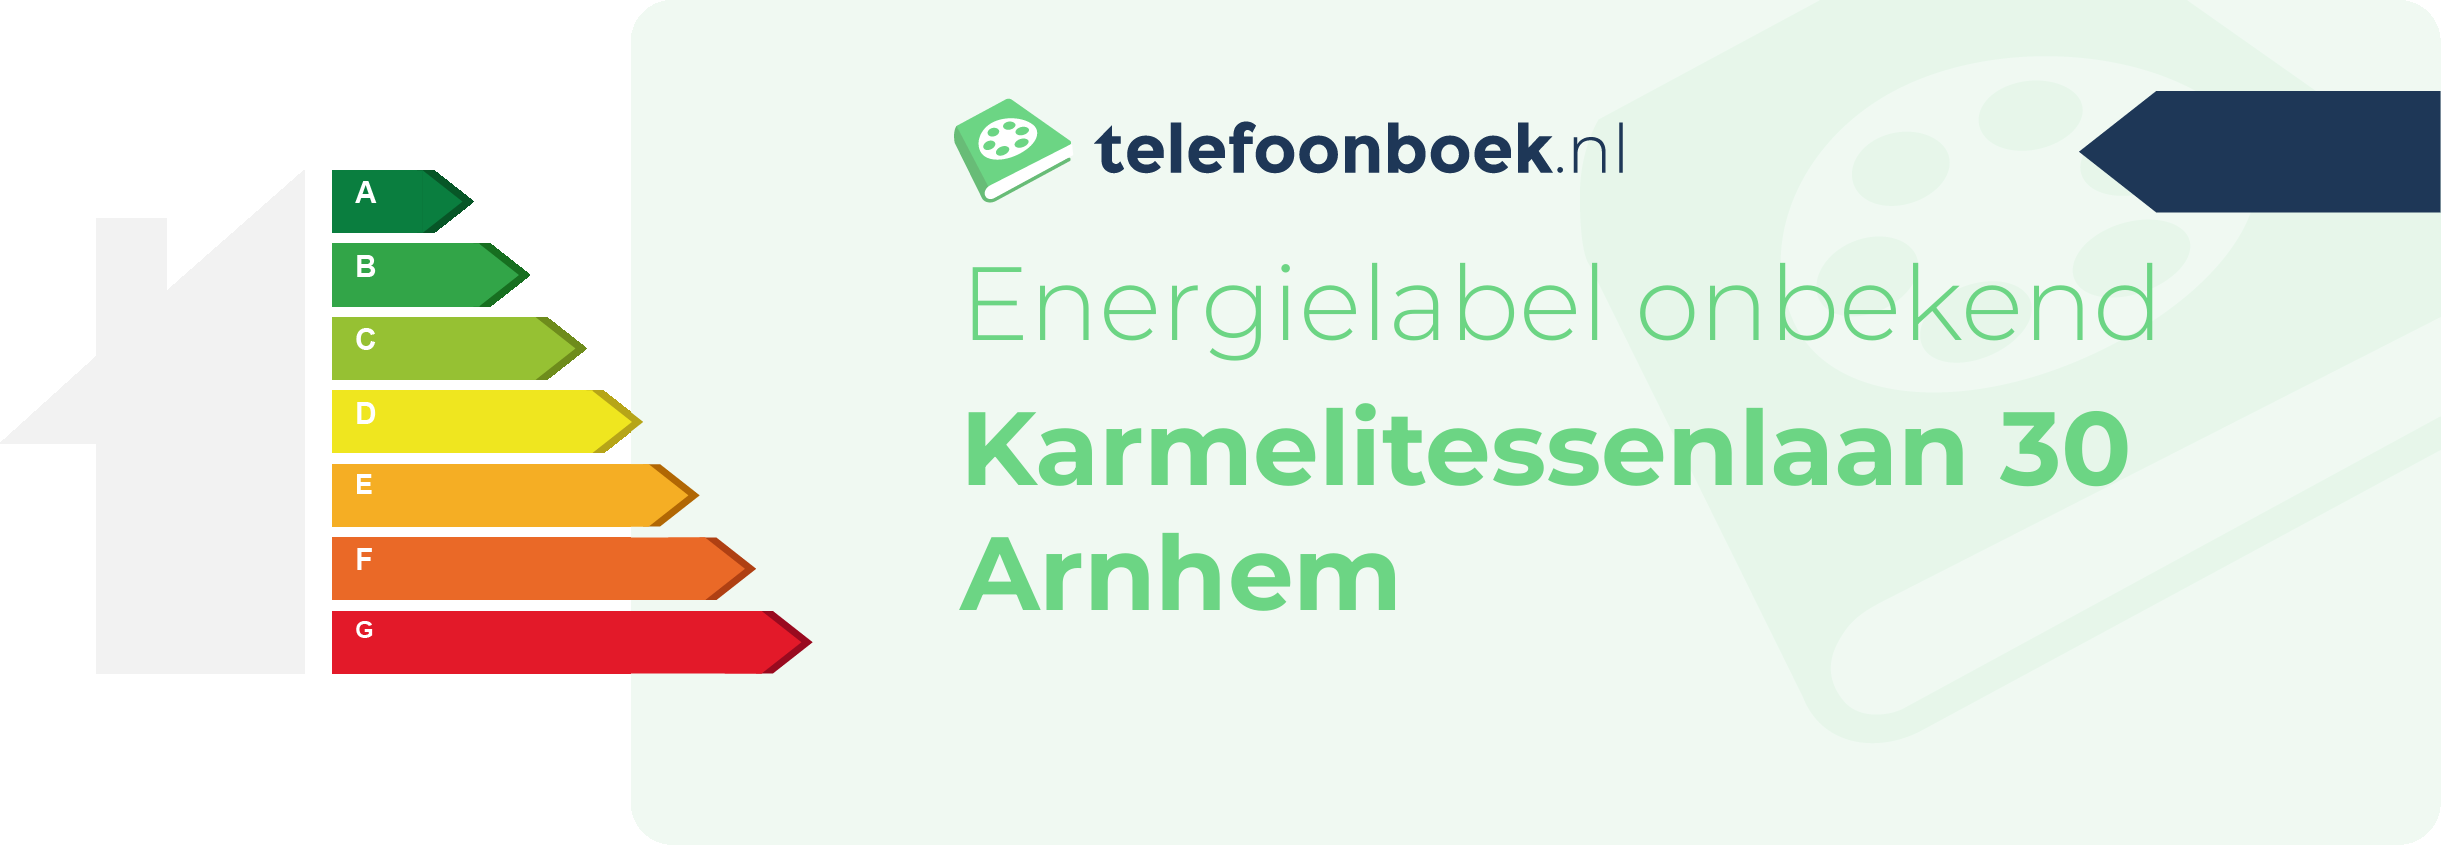 Energielabel Karmelitessenlaan 30 Arnhem